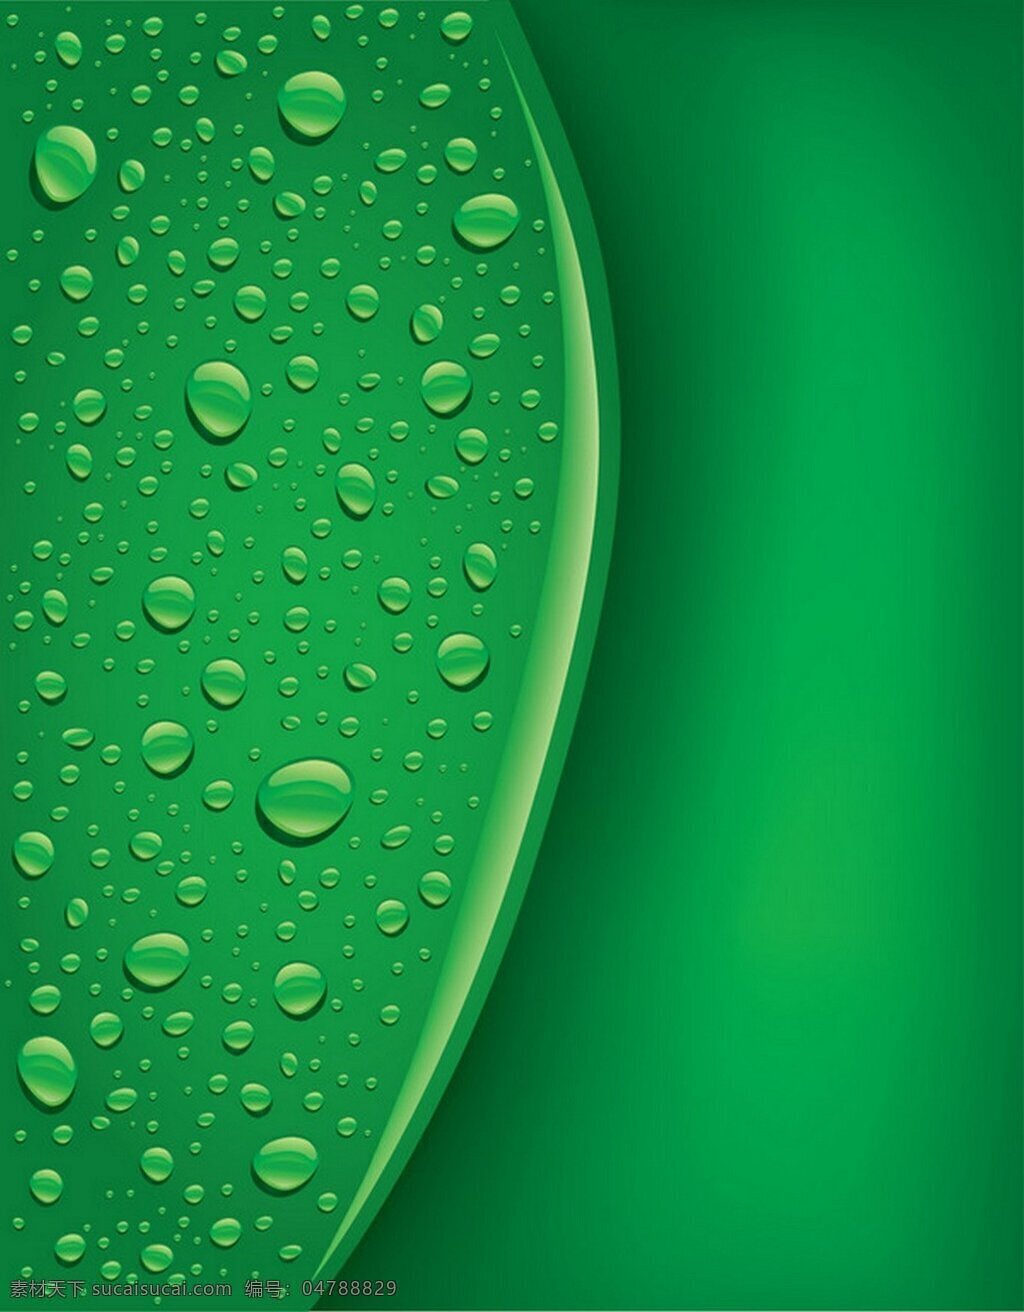 绿色 水珠 背景 绿色背景 叶子 矢量素材